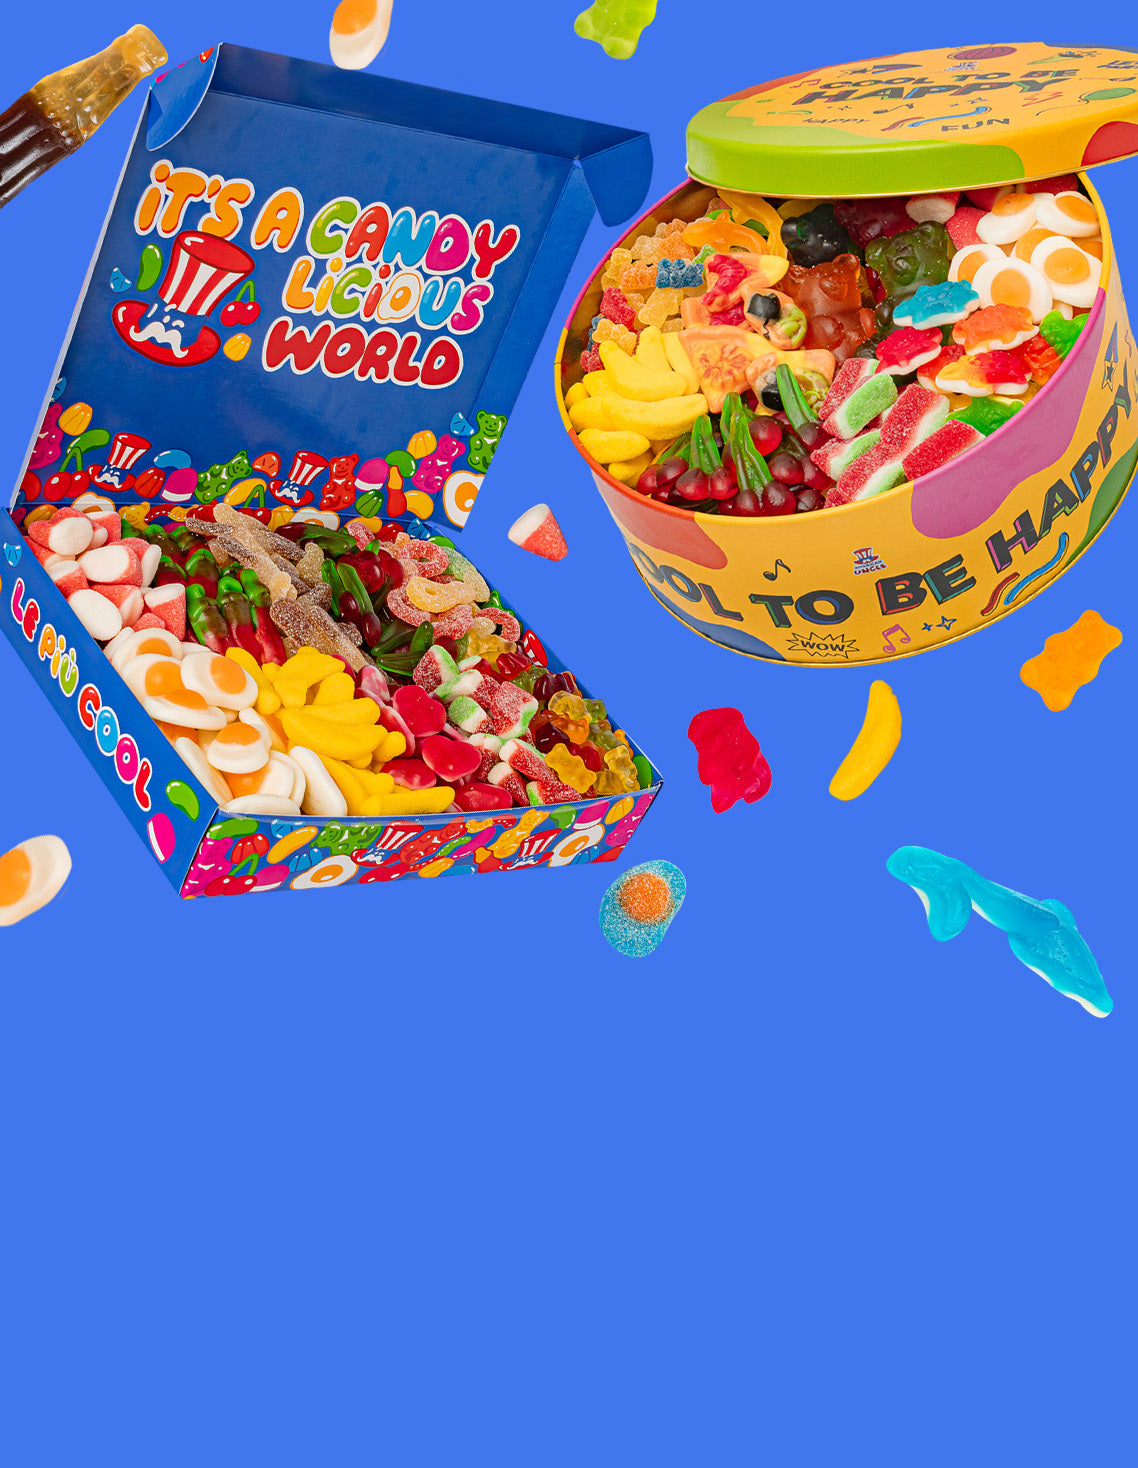 Box caramelle gommose  American Crunch - Snack e cibo americano online